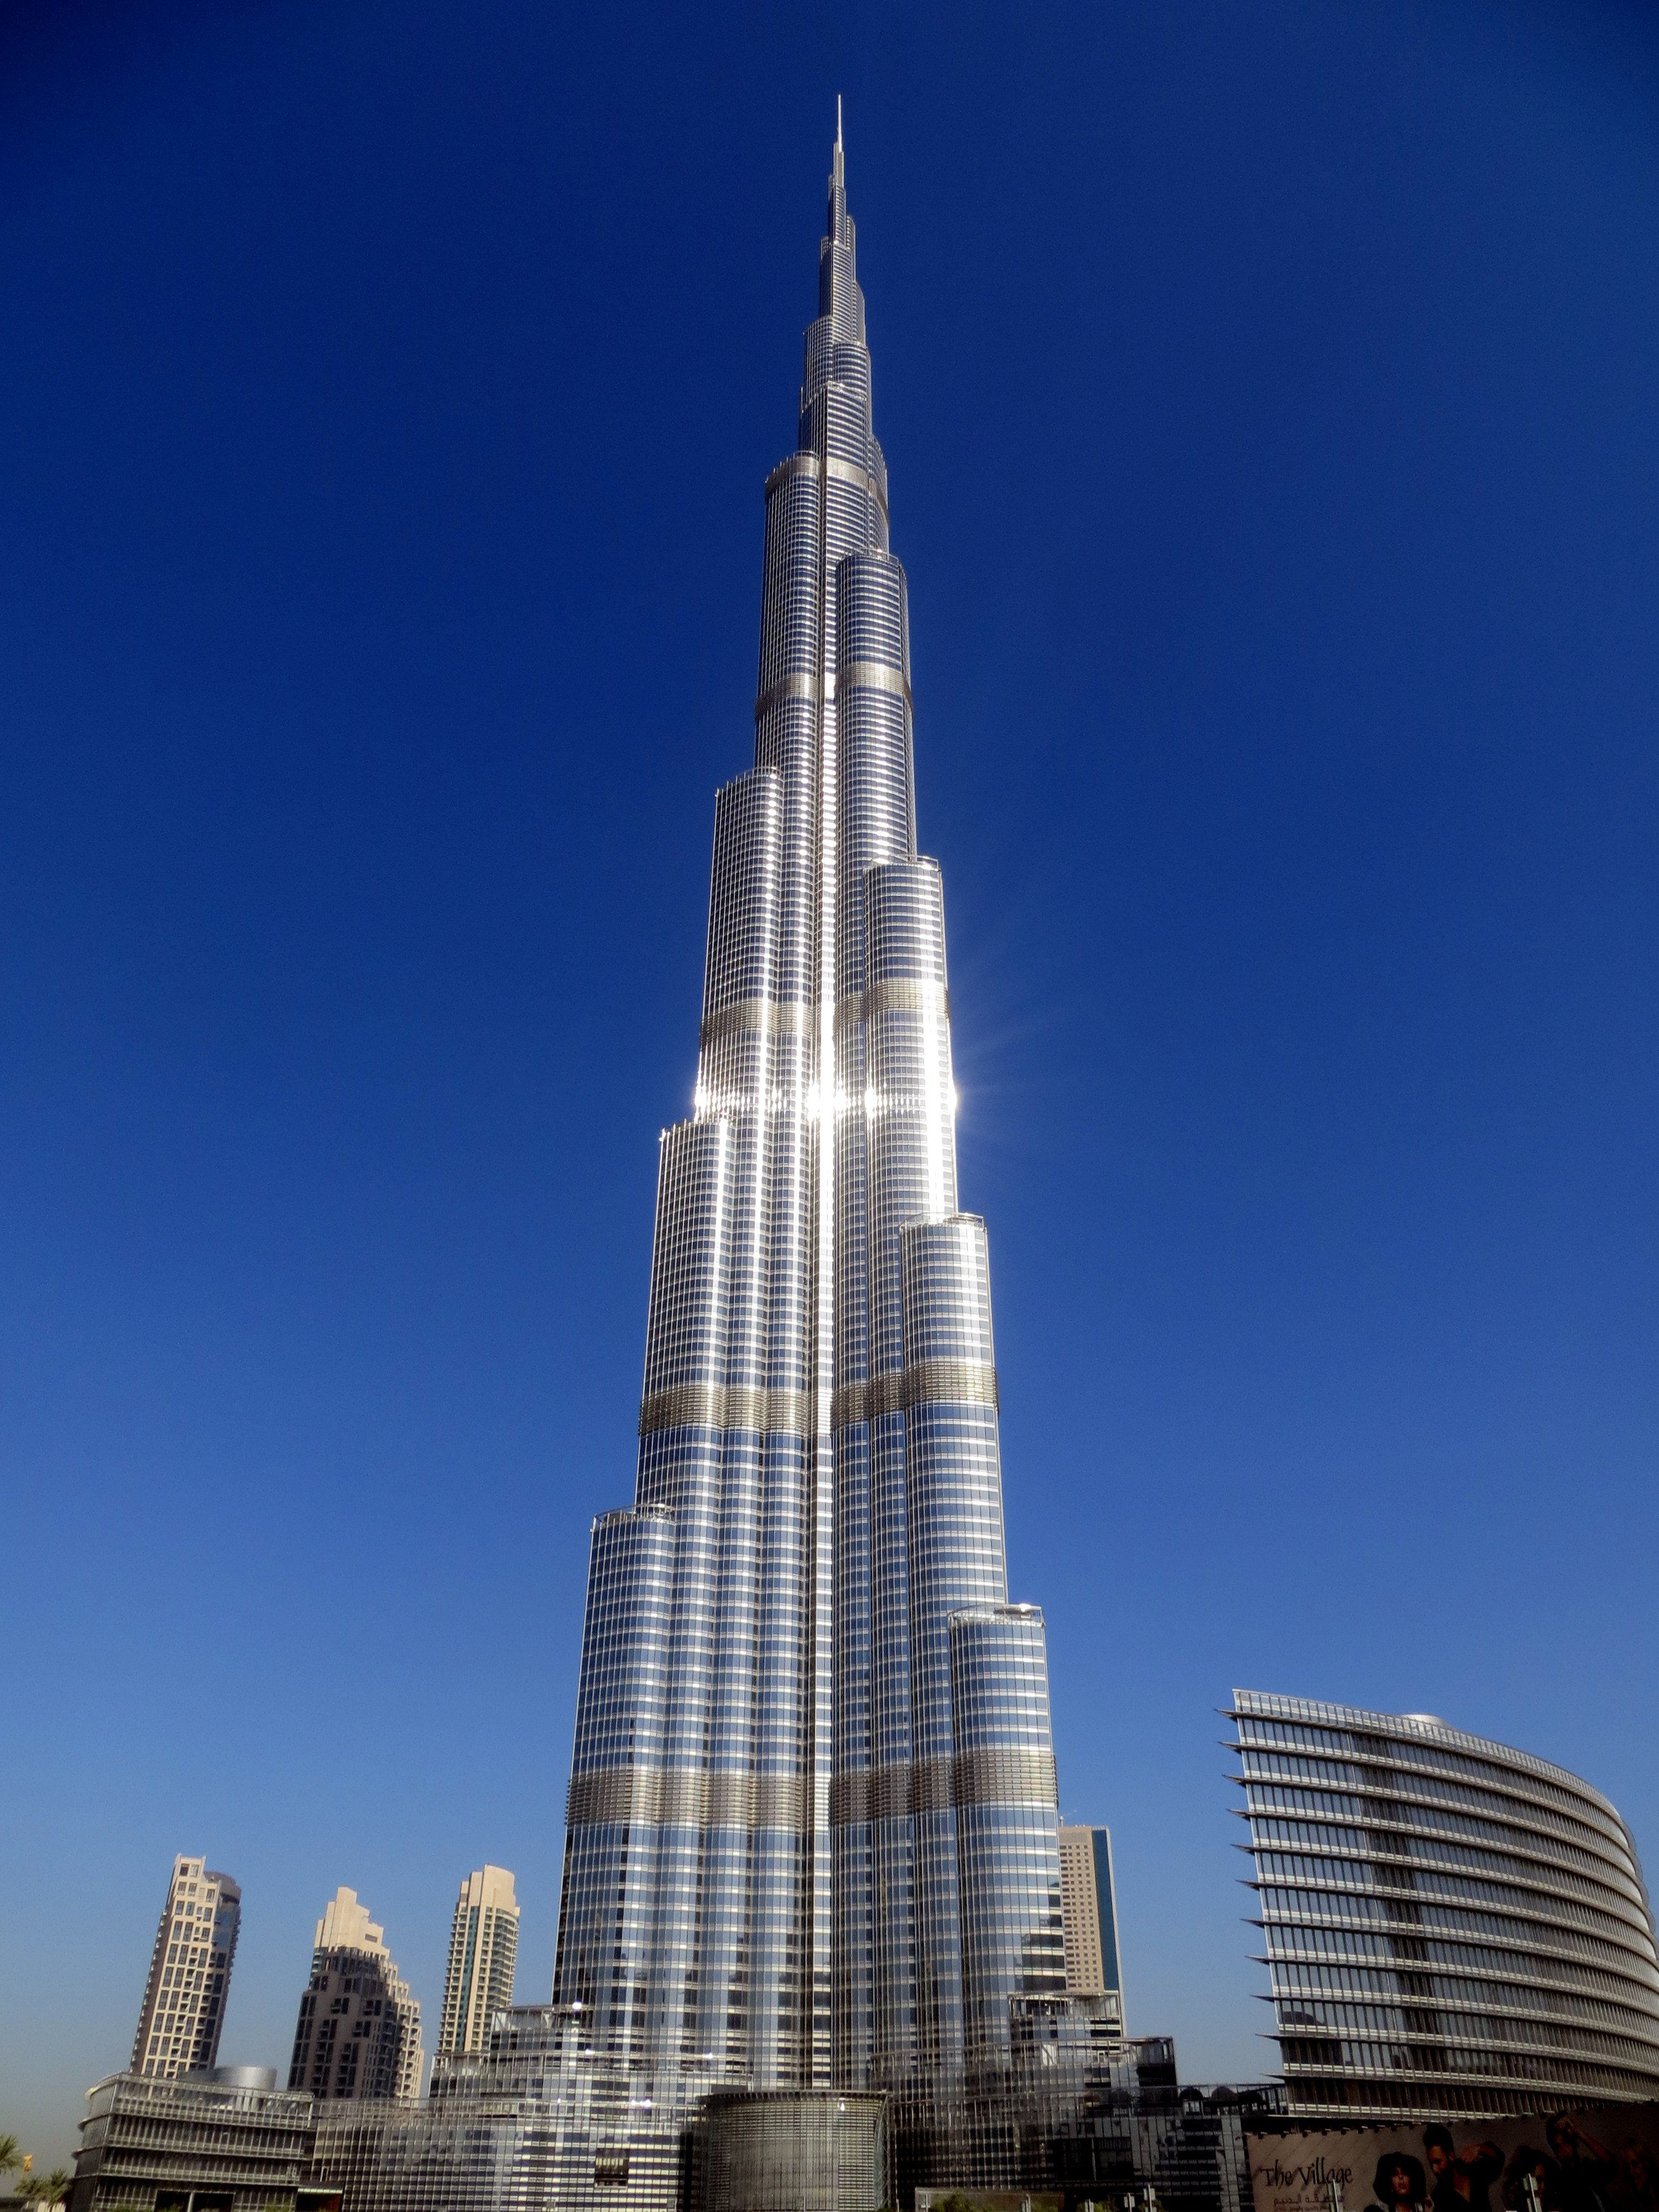 Бурч халифа. Башня Бурдж Халифа в Дубае. Дубай здание Бурдж Халифа. Дубаи башня бершхалтфа. Бурдж-Халифа (828 м). Дубай, ОАЭ.